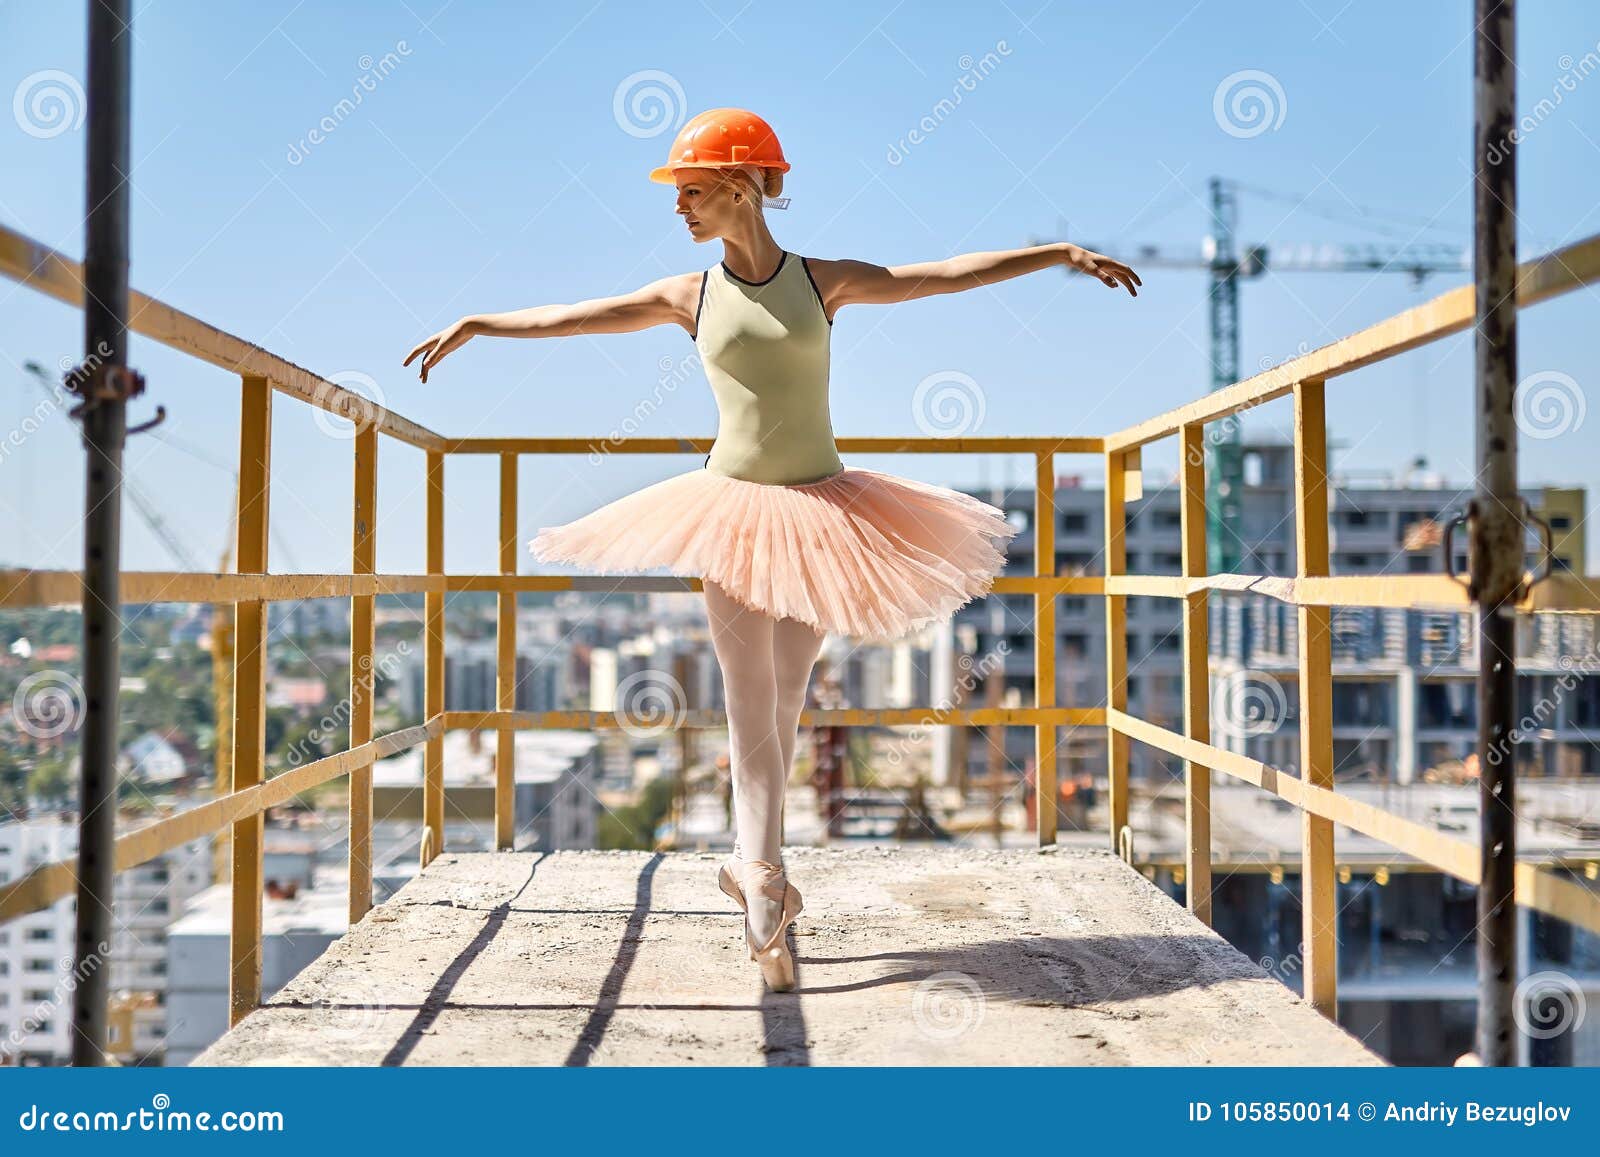 Ballerina som poserar på den konkreta balkongen. Den glade ballerina står på tårna på den konkreta balkongen av den oavslutade byggnaden på cityscapebakgrunden Hon bär den gröna bodyen, persikaballerinakjolen, damasker, pointes och konstruktionshjälmen